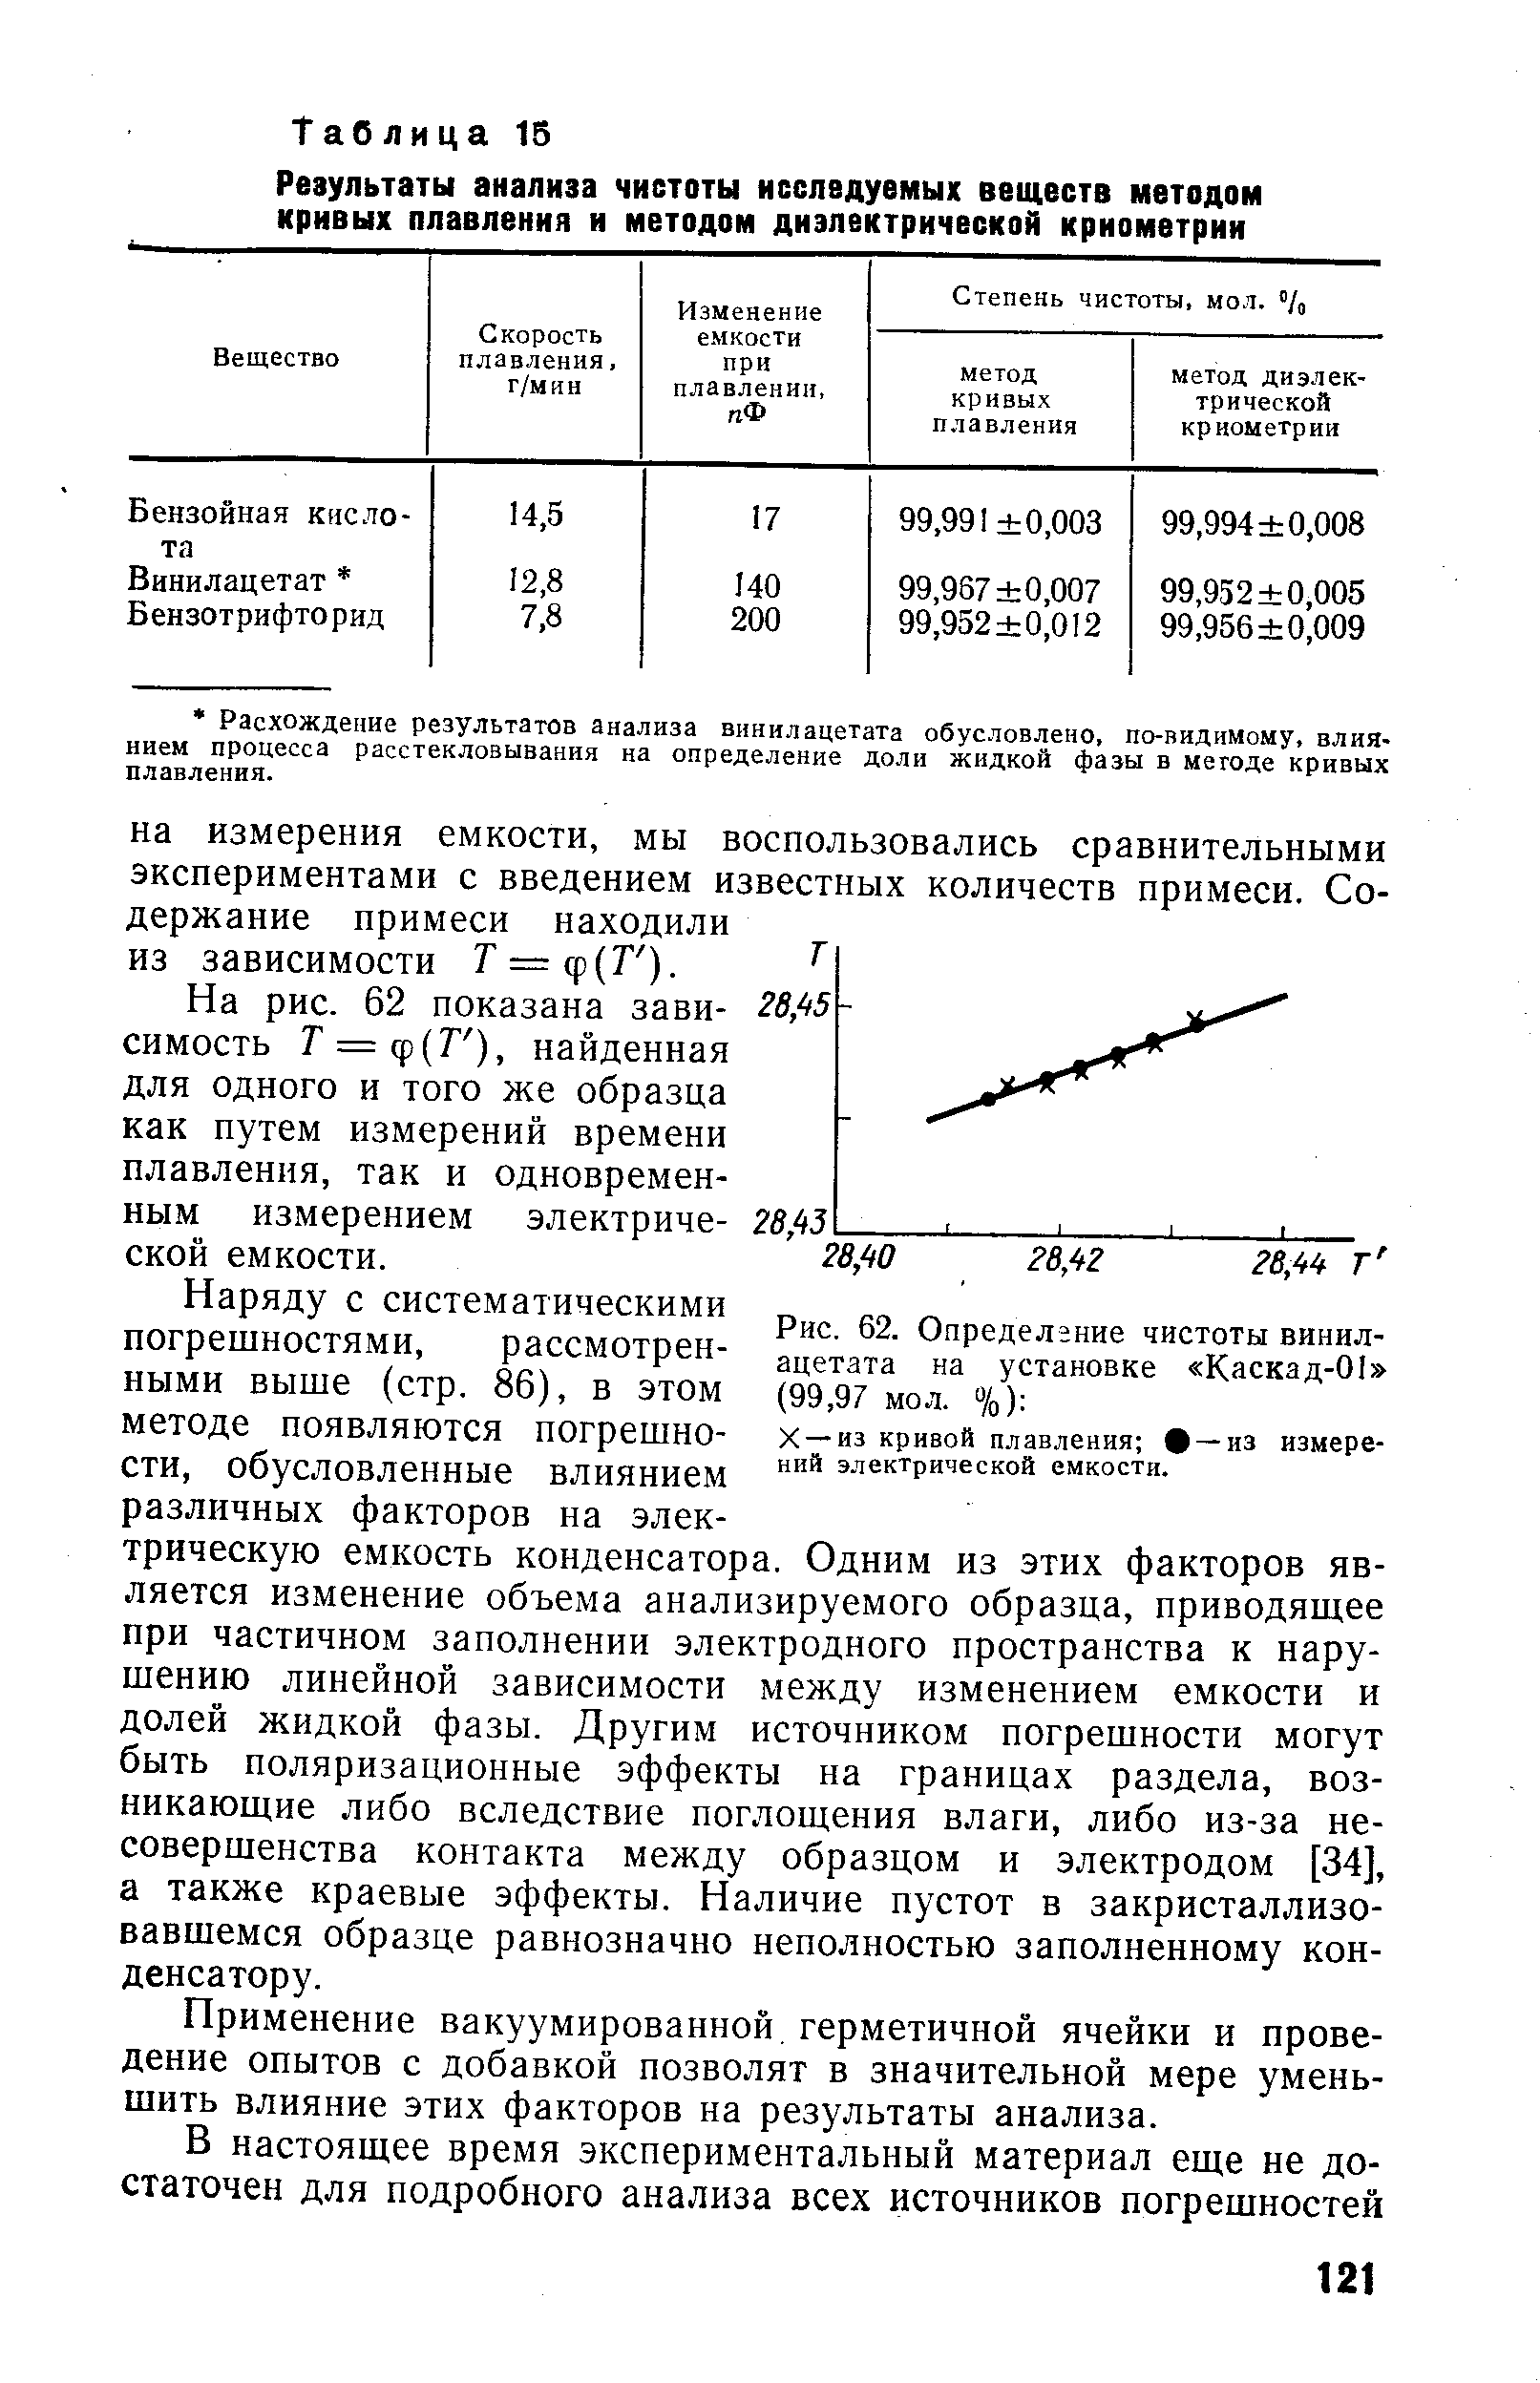 На рис. 62 показана зави- 28,45-симость Г = ф(Г ), найденная для одного и того же образца как путем измерений времени плавления, так и одновременным измерением электриче- 28,43 ской емкости.